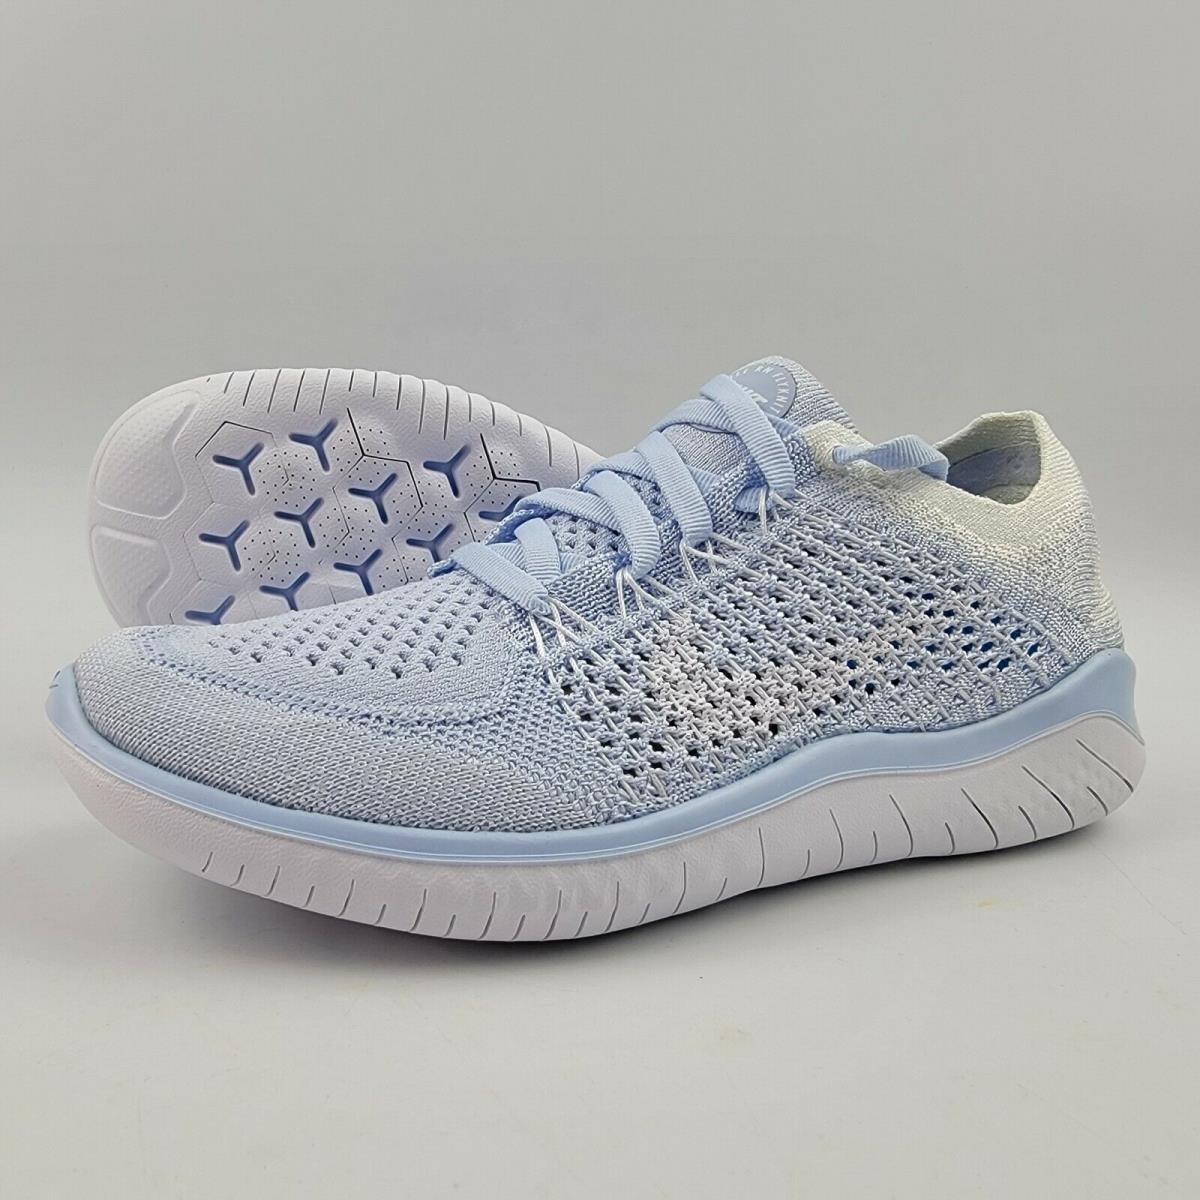 Nike Free Flyknit 2018 Shoes Hydrogen Blue White 942839-402 Womens 5 | 884802508311 - Nike shoes Free Flyknit - Blue | SporTipTop